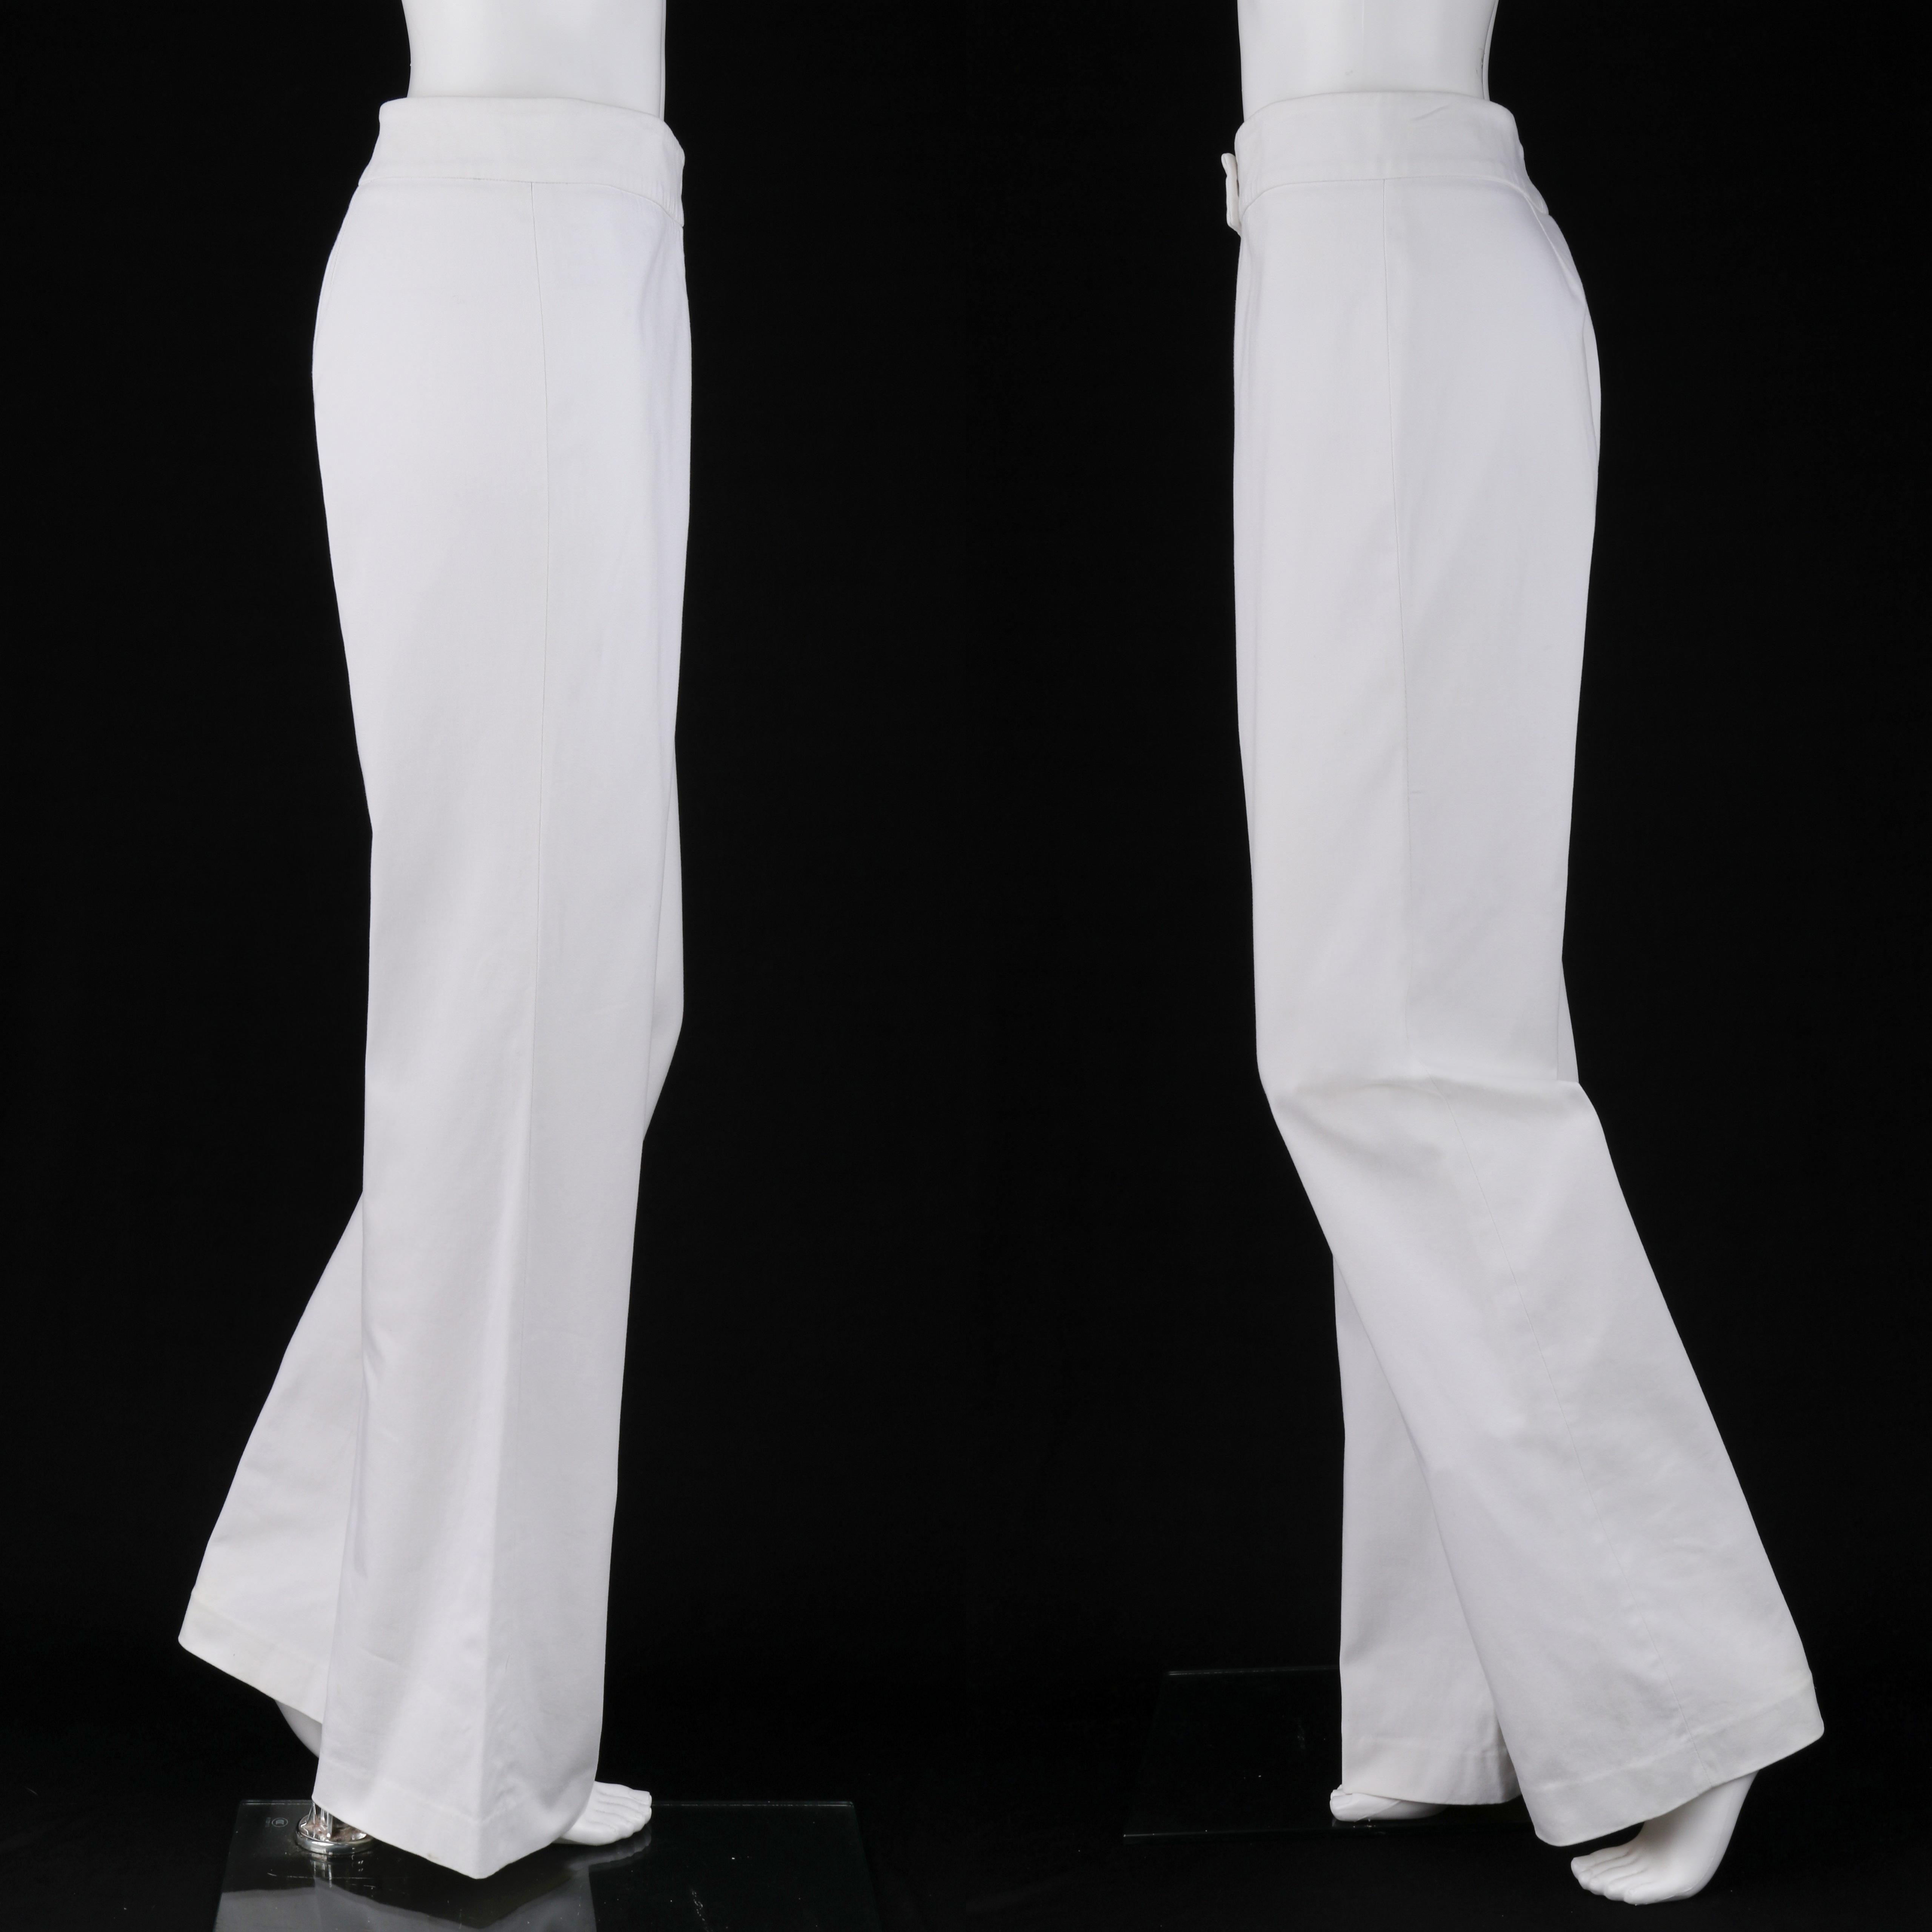 Women's VALENTINO c.1990's 2pc White Blazer Wide Leg Trouser Pants Power Suit Set For Sale